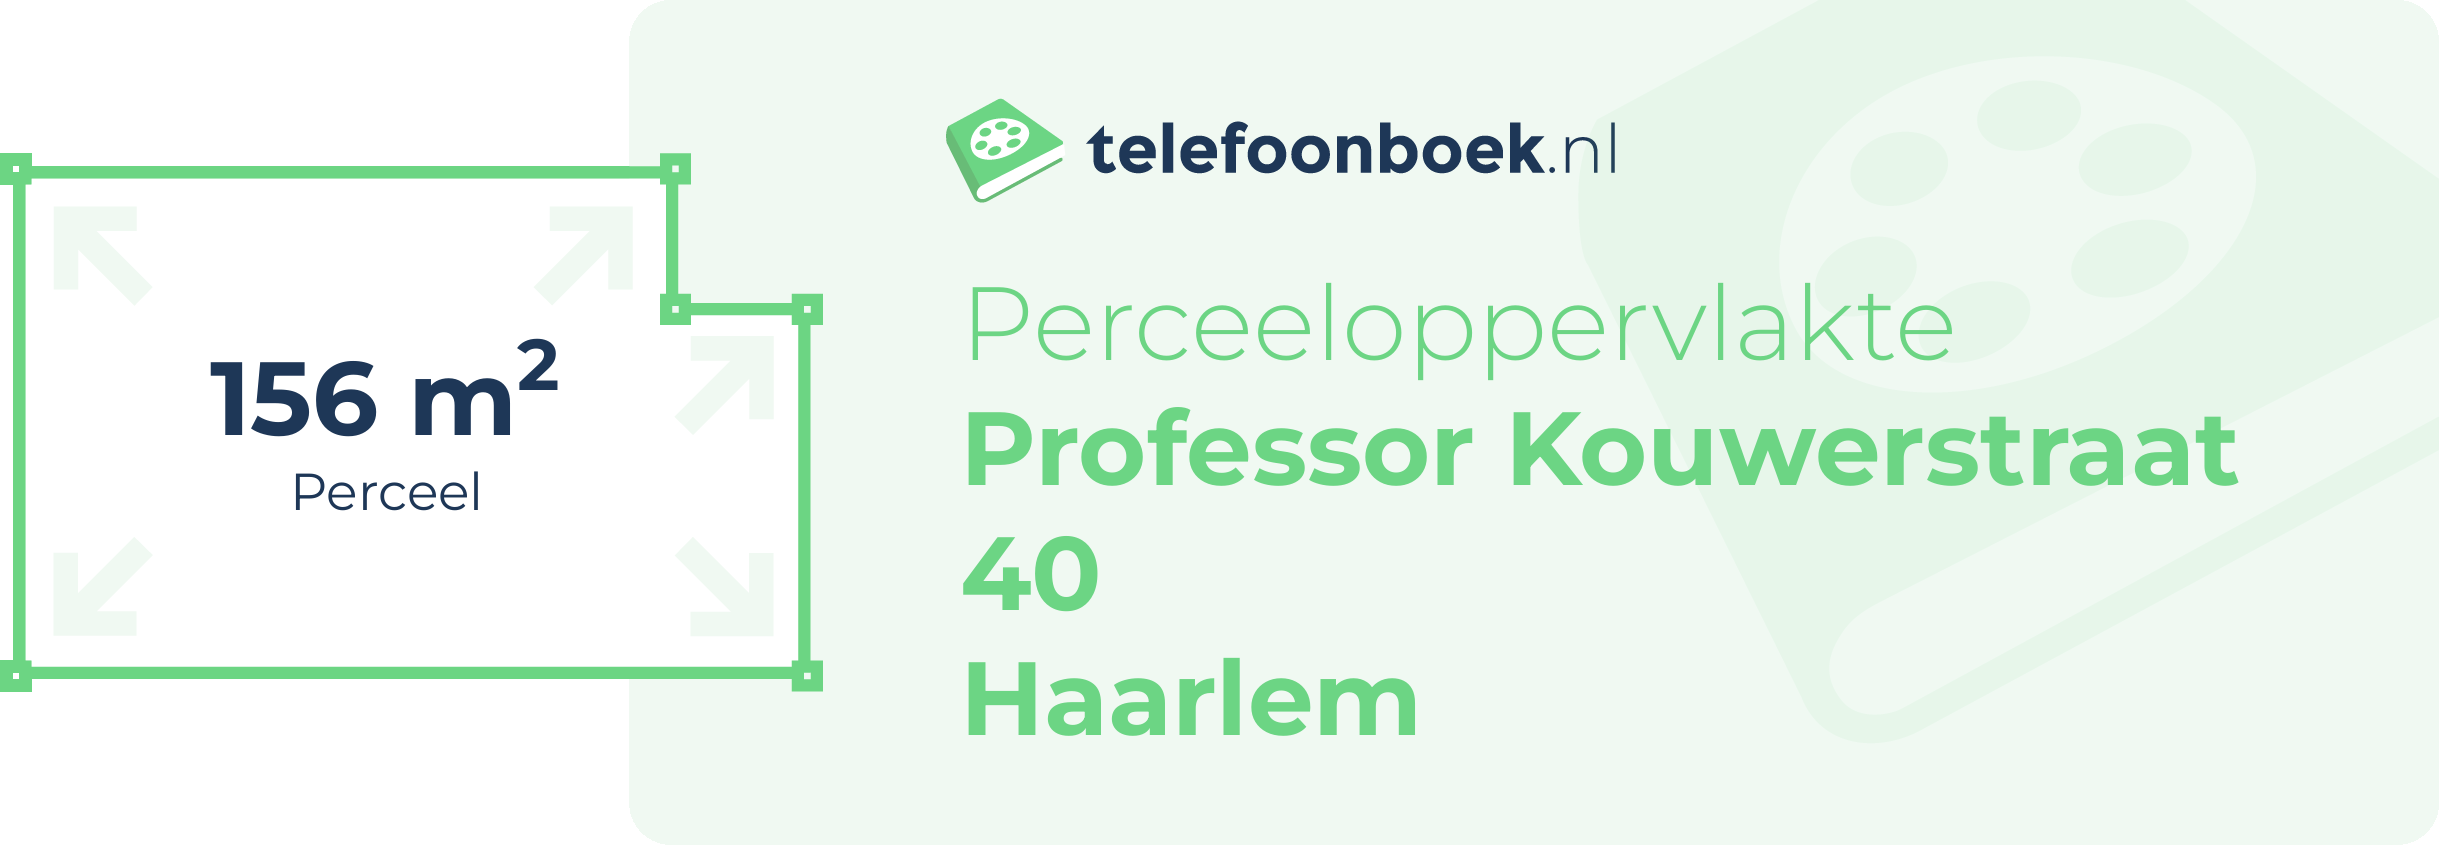 Perceeloppervlakte Professor Kouwerstraat 40 Haarlem